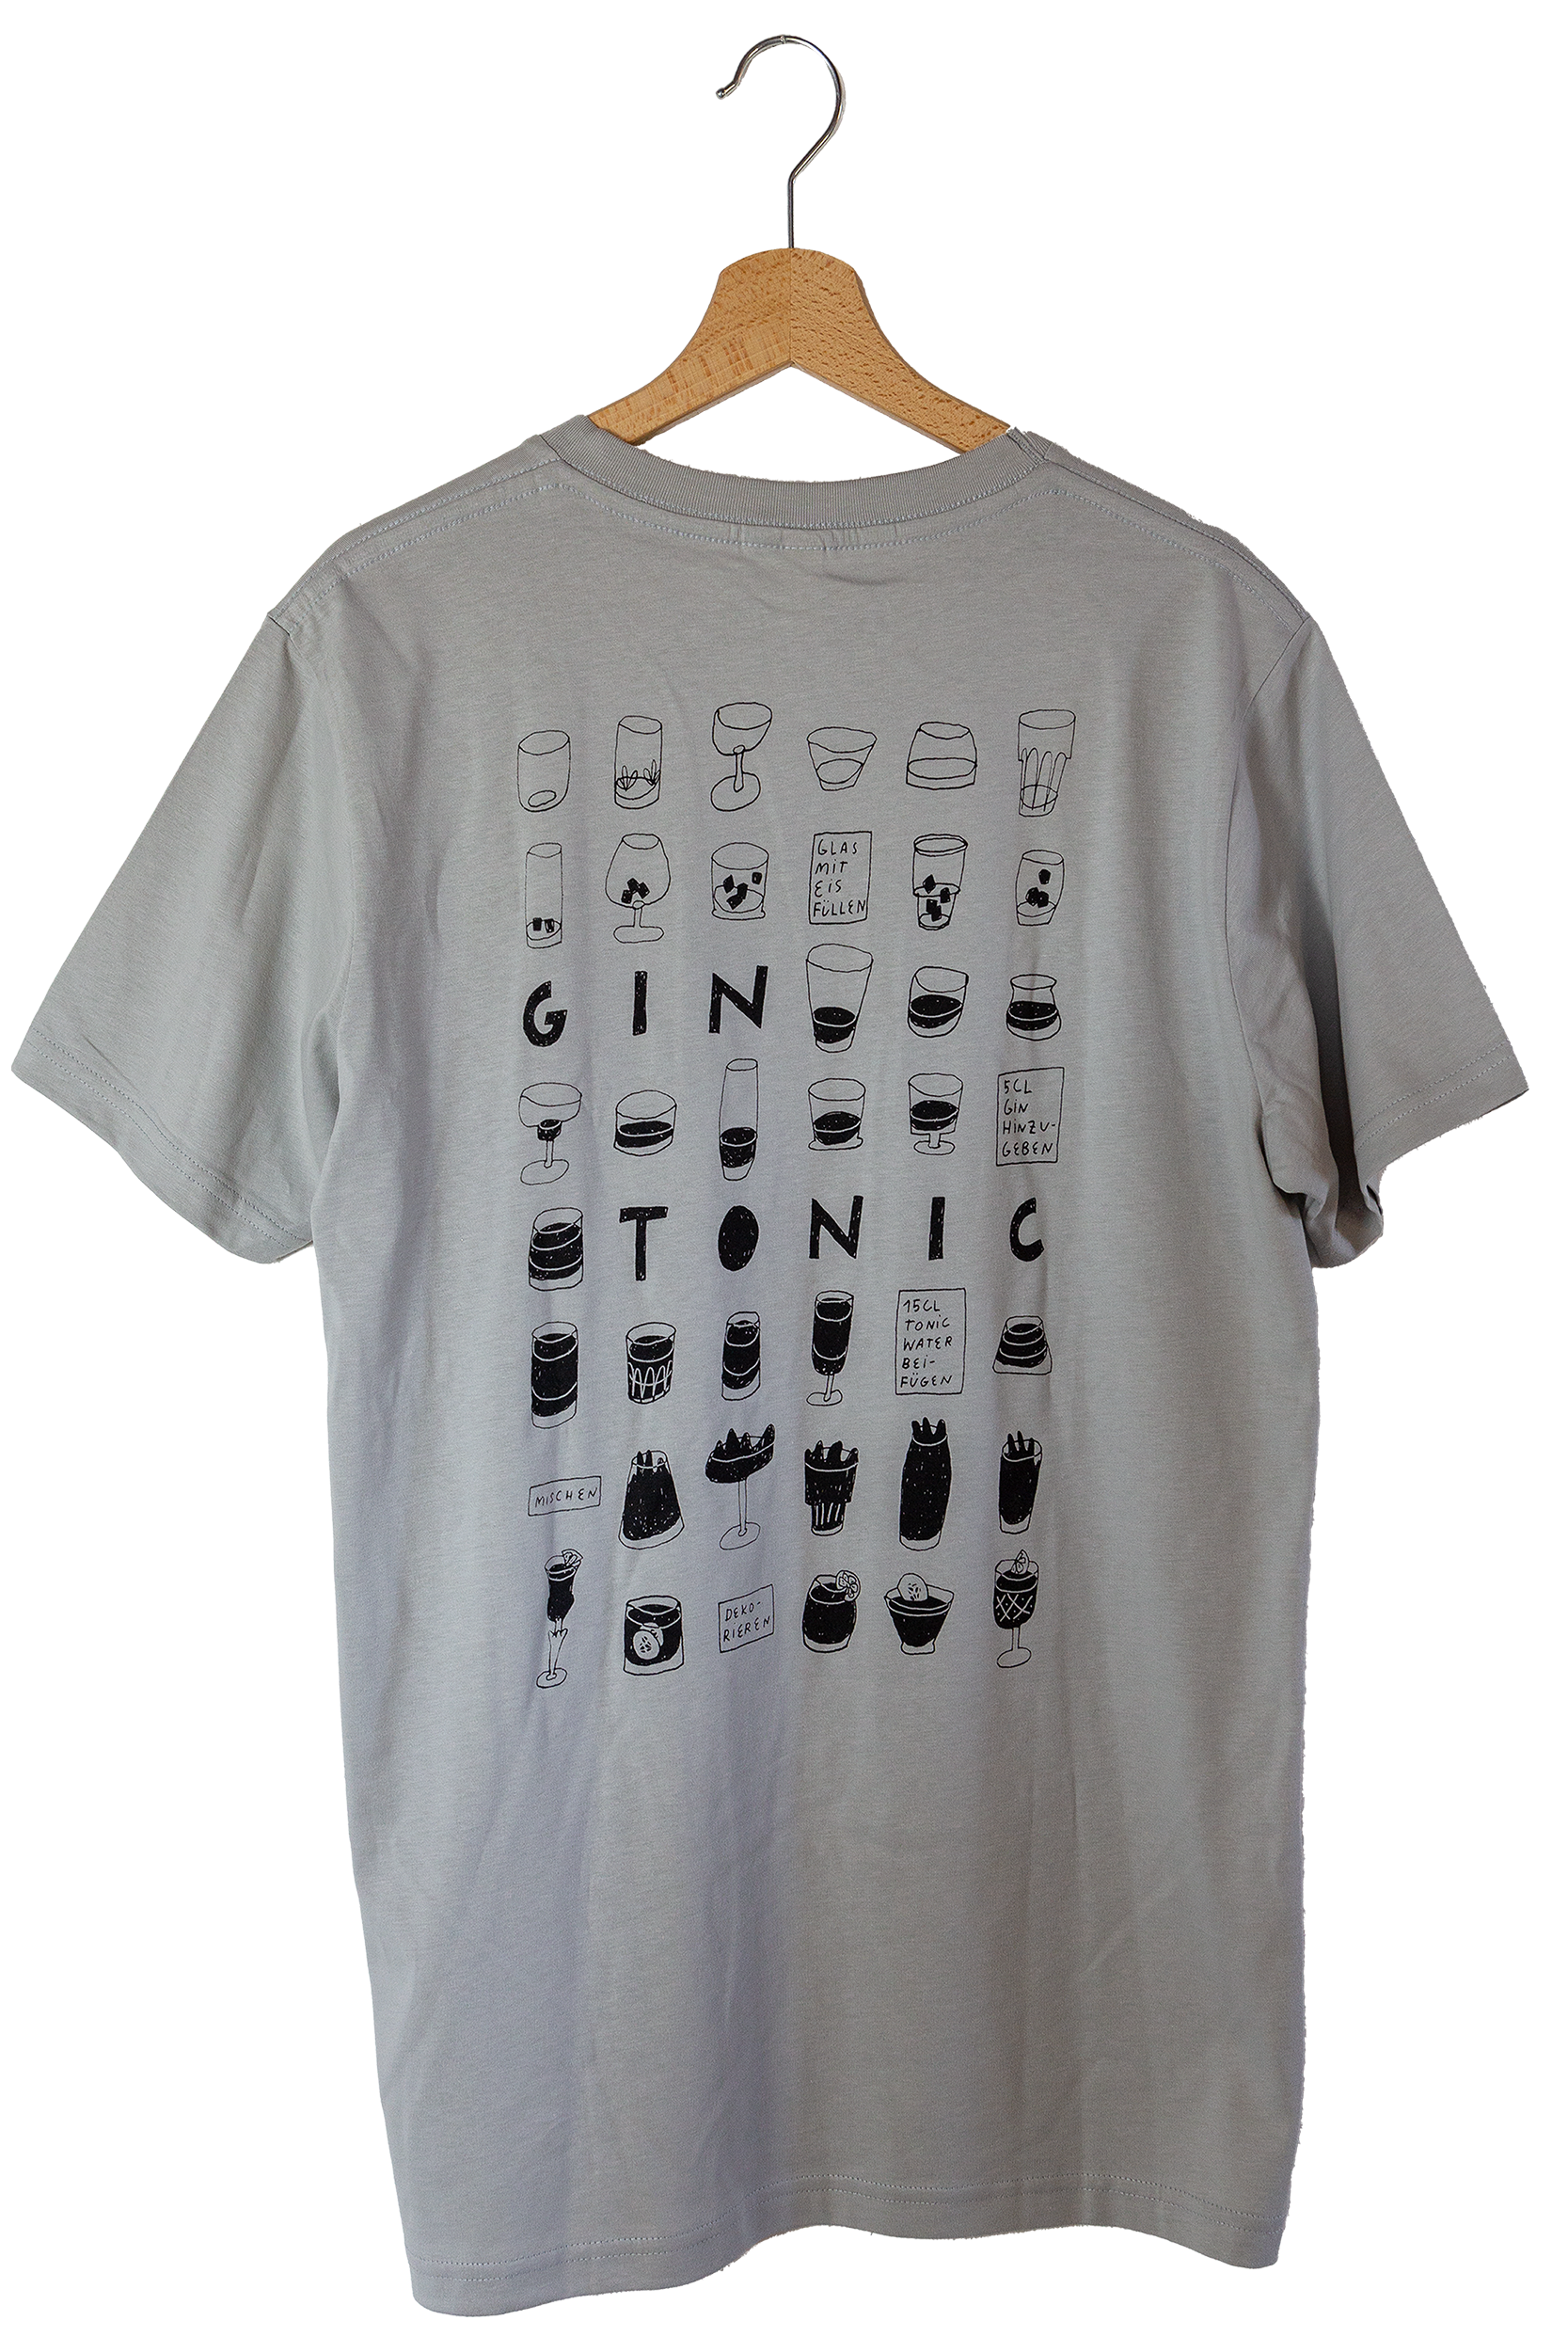 Shirt Gin Tonic